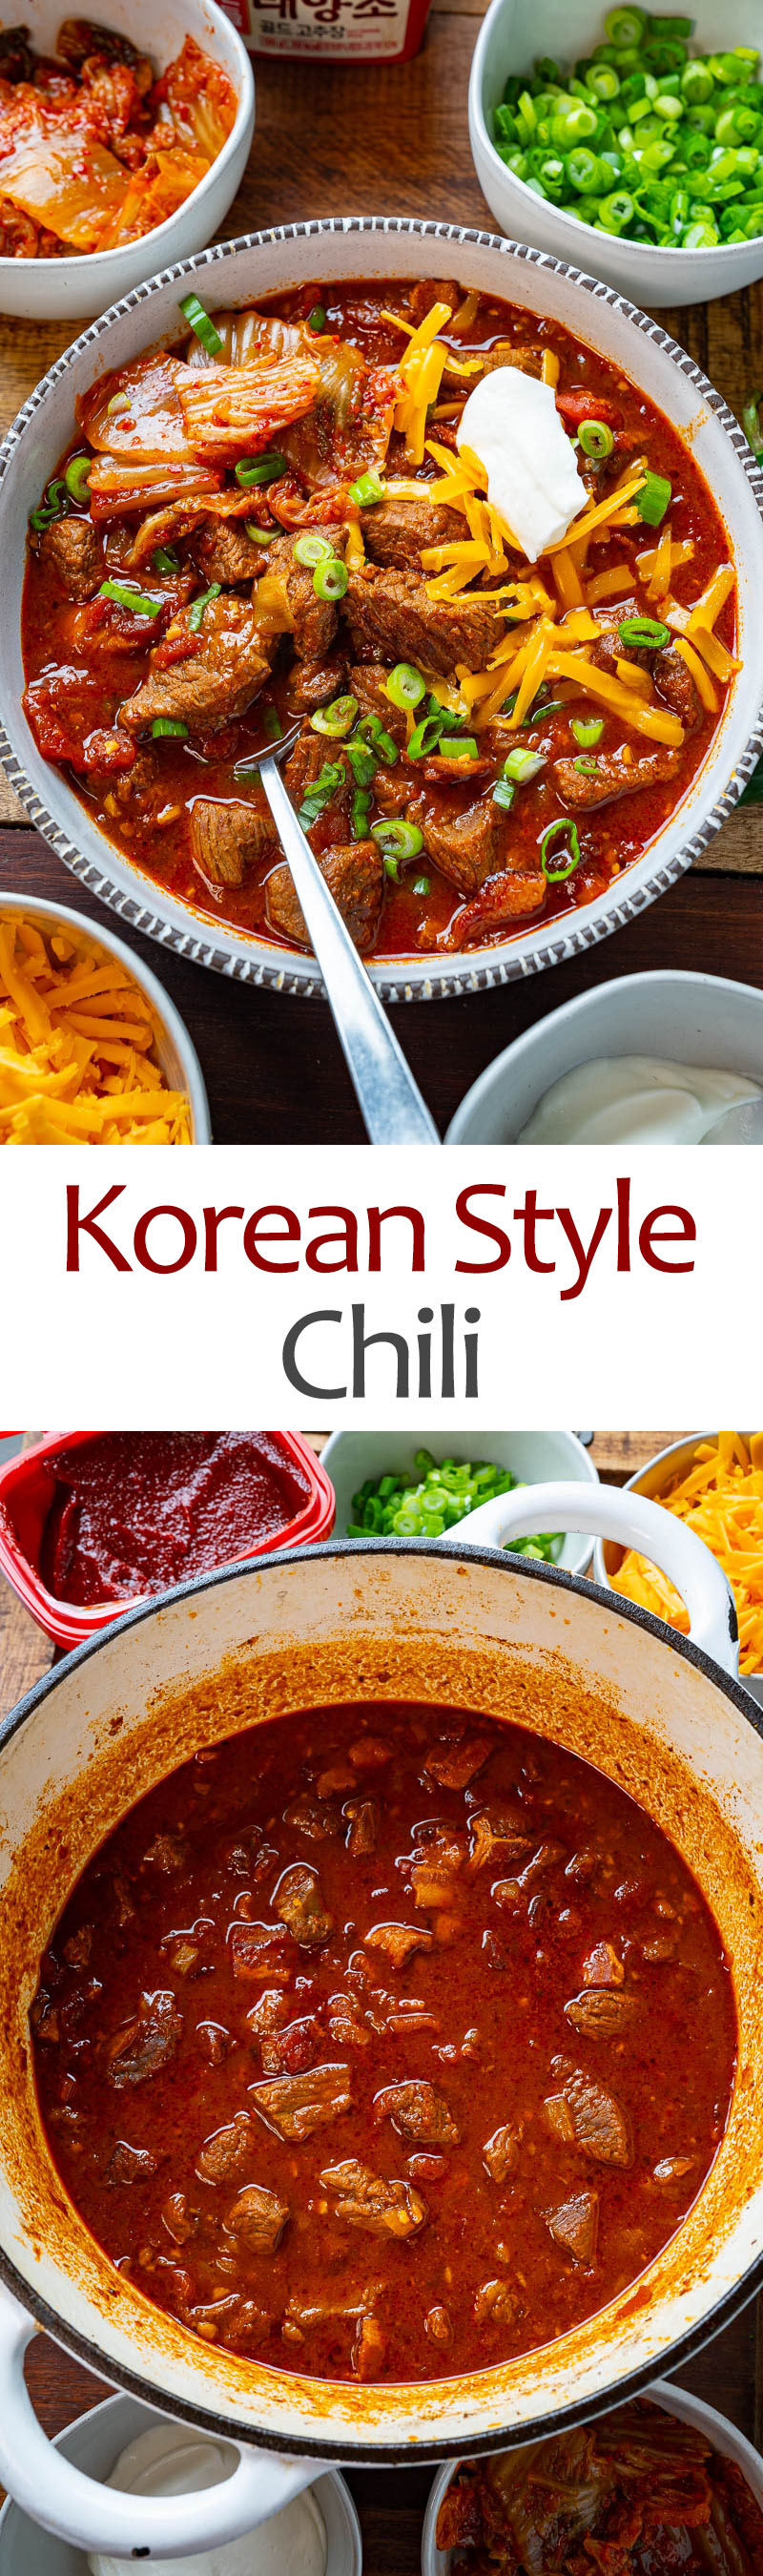 Korean Style Chili